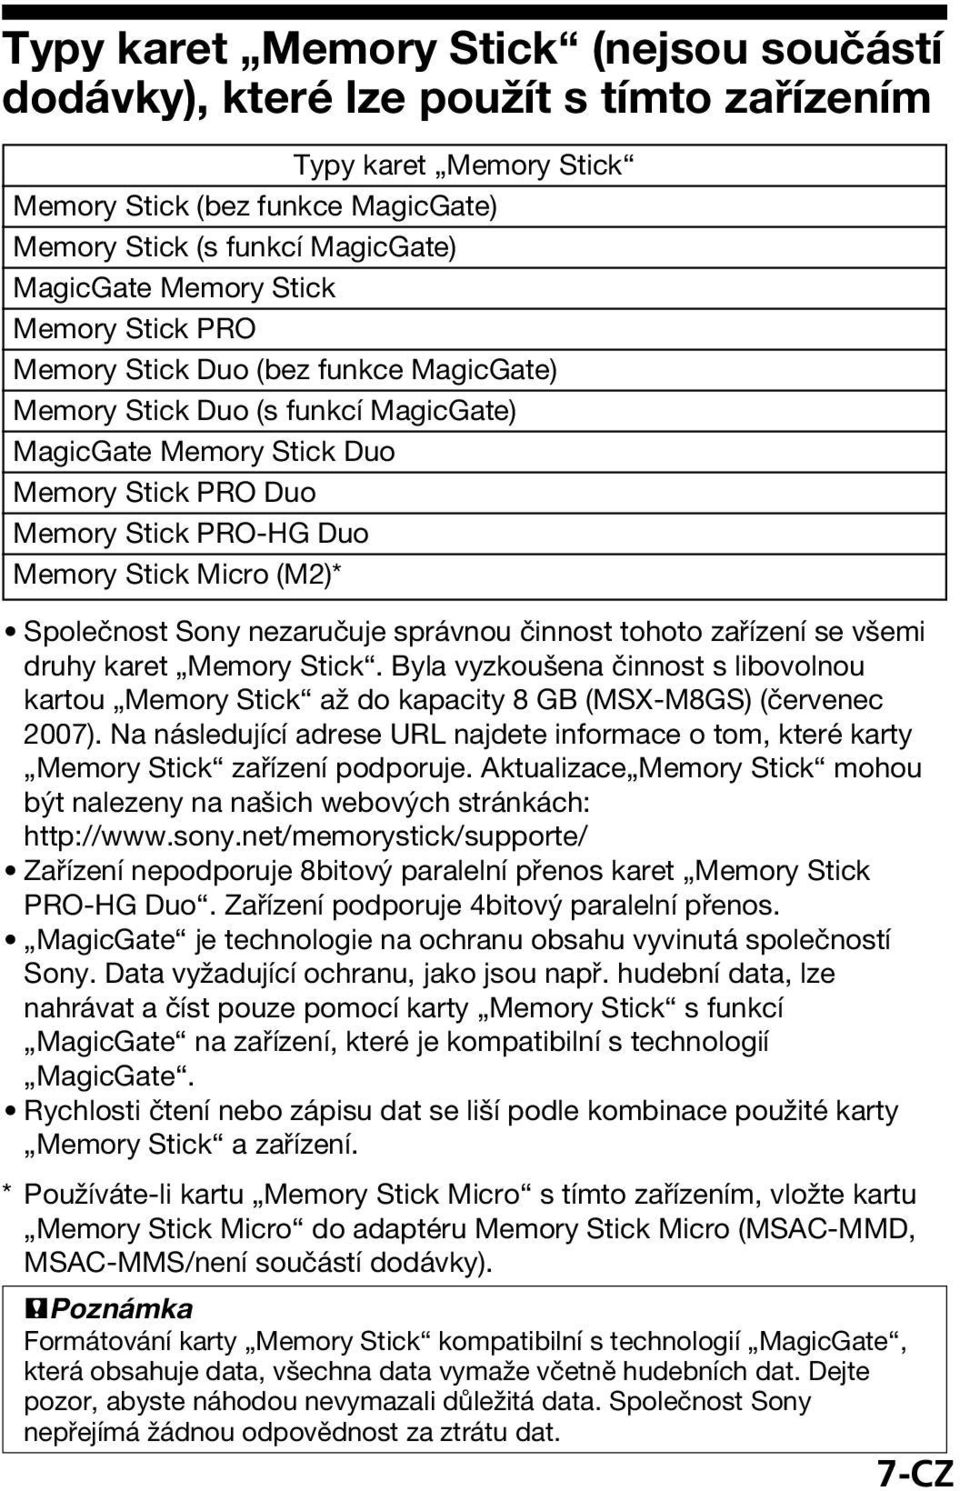 Společnost Sony nezaručuje správnou činnost tohoto zařízení se všemi druhy karet Memory Stick. Byla vyzkoušena činnost s libovolnou kartou Memory Stick až do kapacity 8 GB (MSX-M8GS) (červenec 2007).